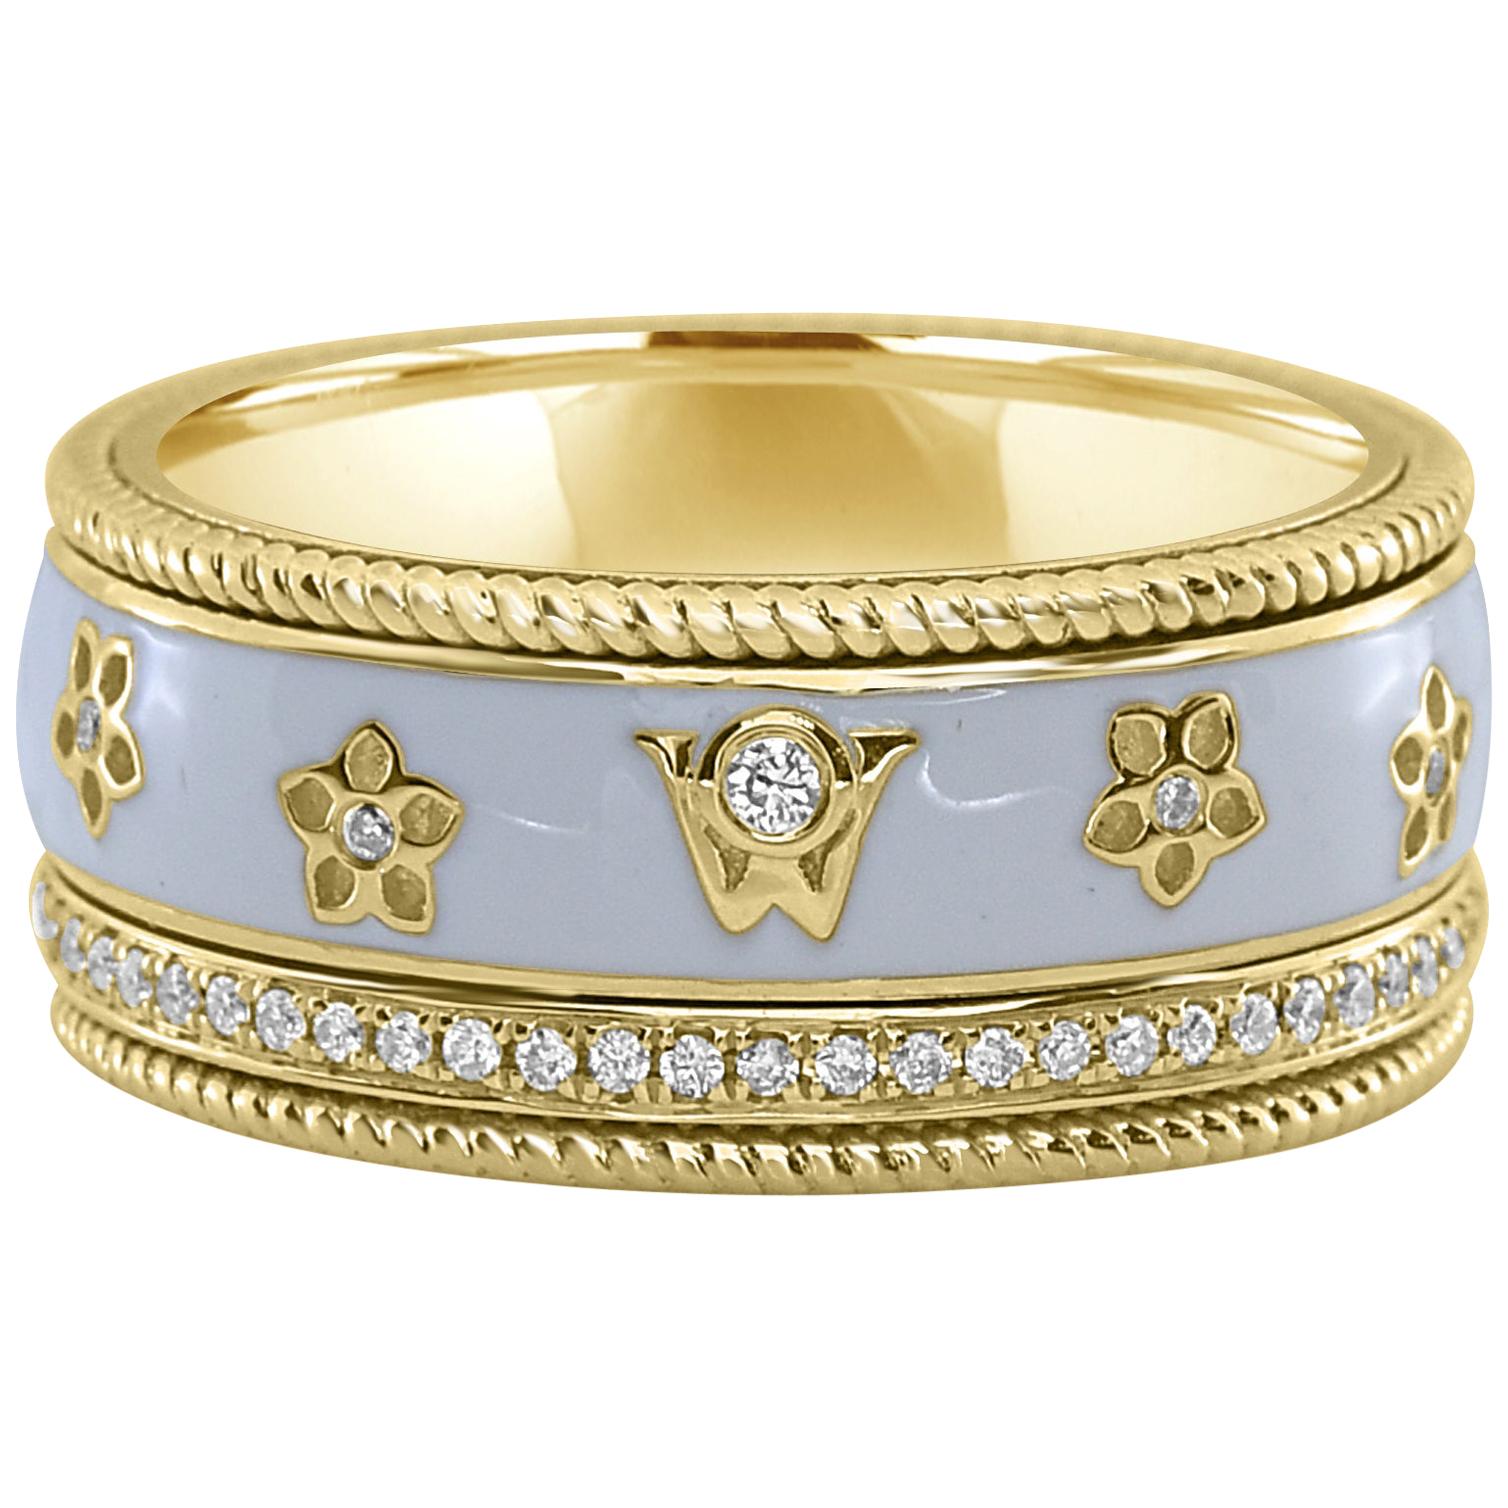 0.28 Carat White Diamond Enamel Floral Motif Ring Set in 18 Karat Yellow Gold